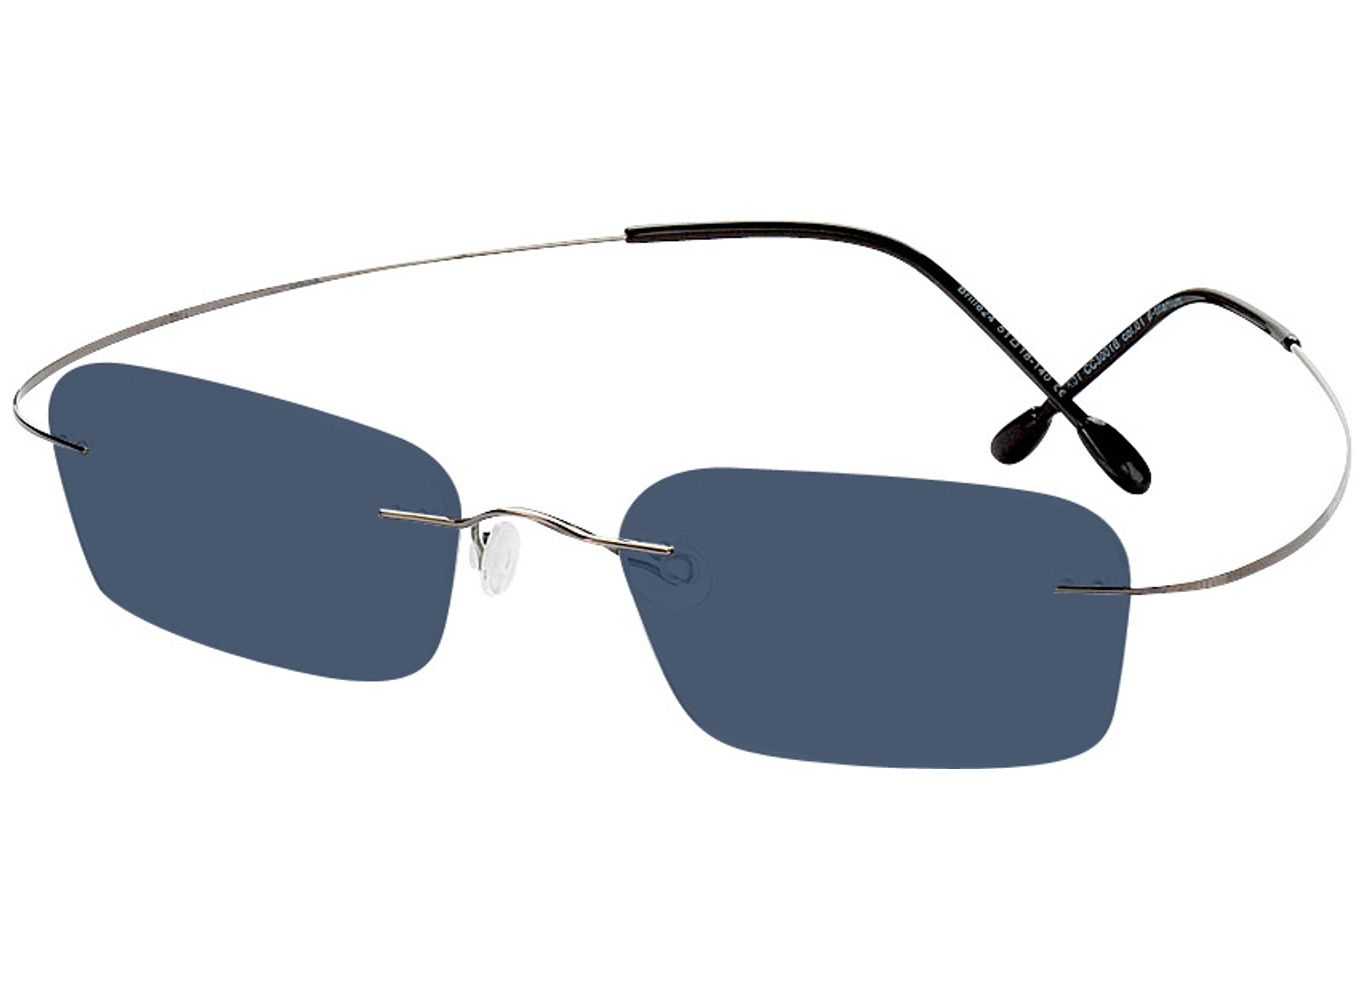 Mackay - grau Sonnenbrille mit Sehstärke, Randlos, Rechteckig von Brille24 Collection